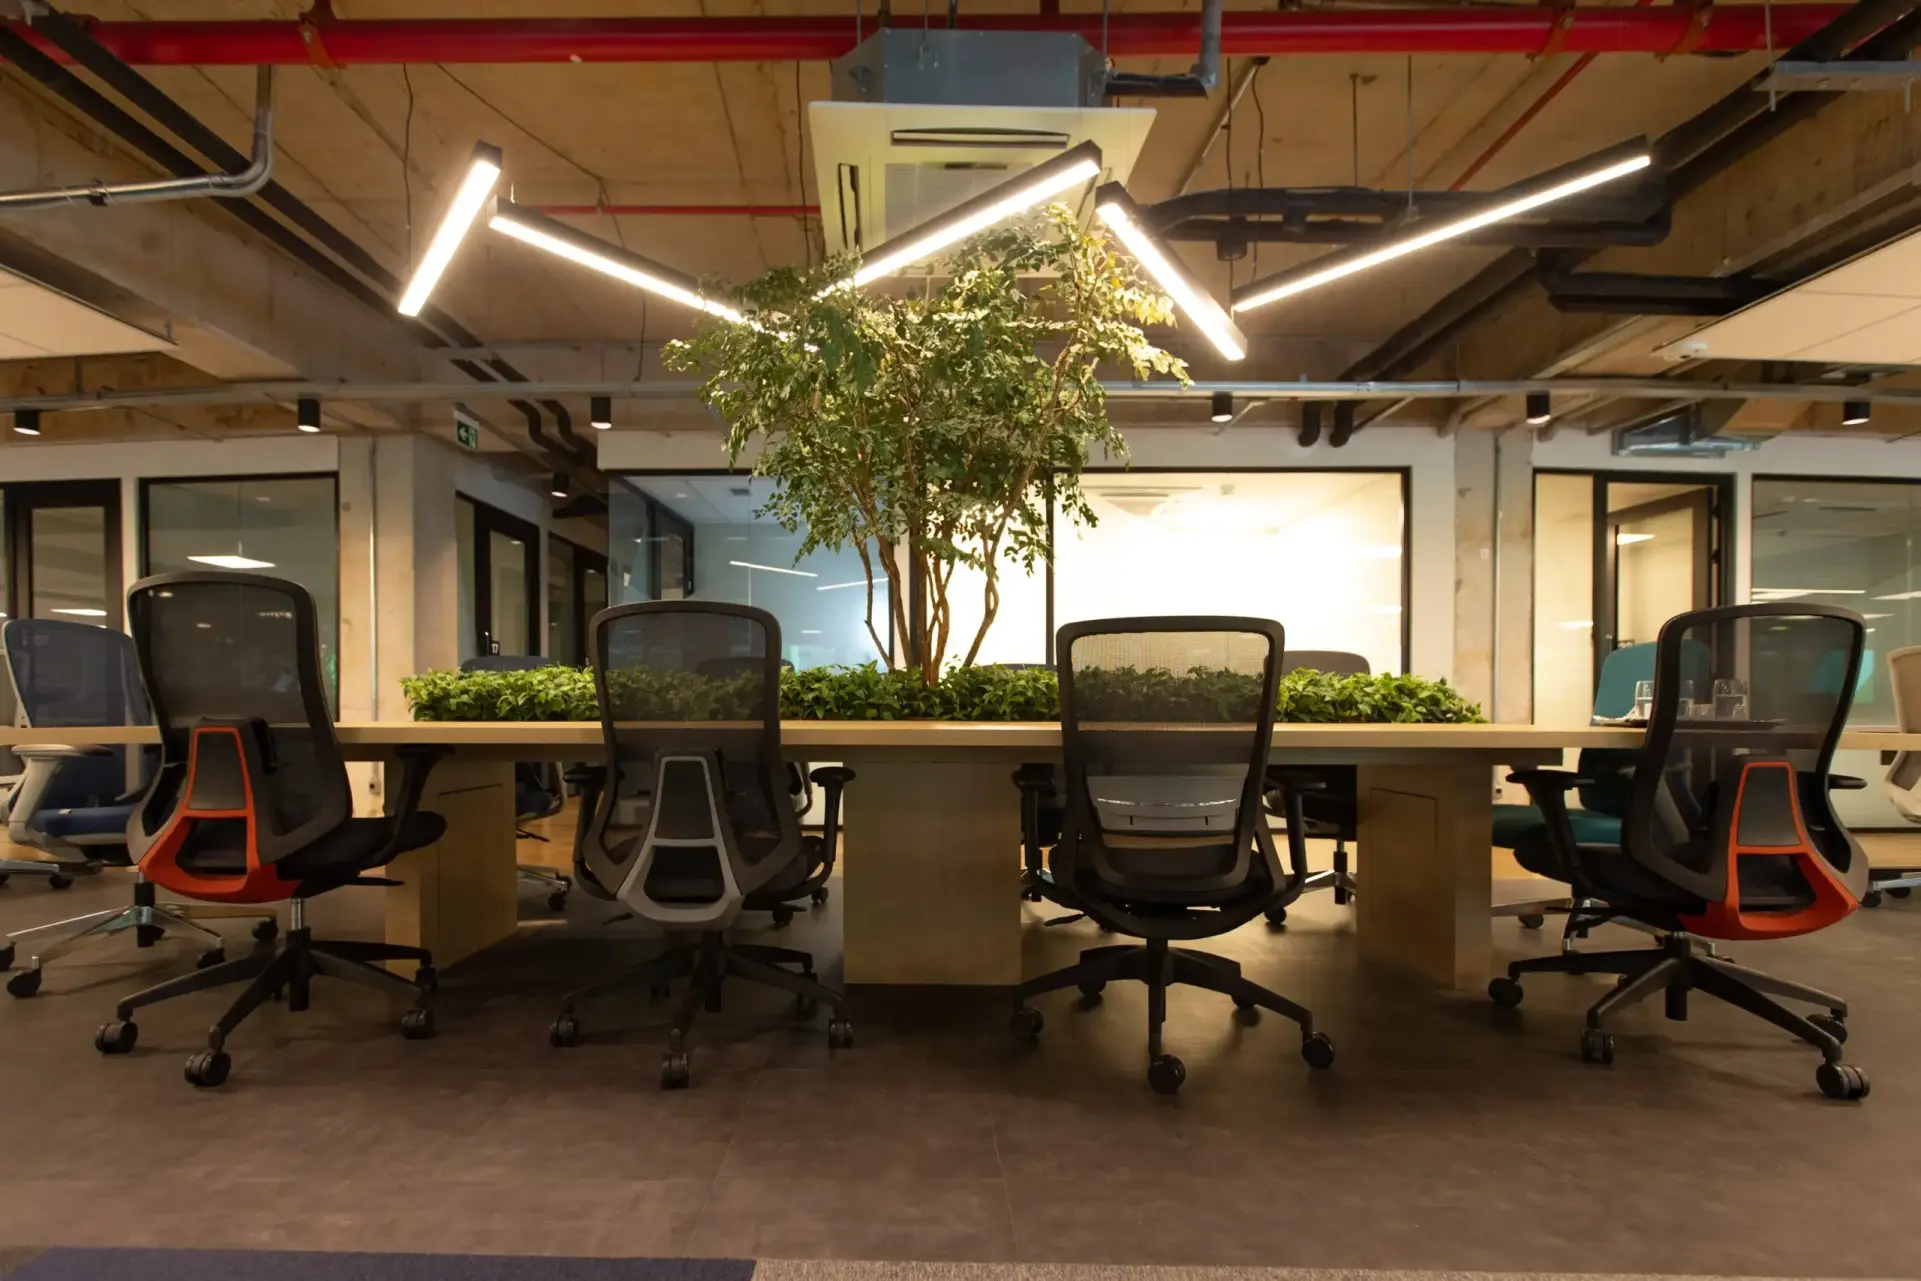 Foto de escritório compartilhado do Base Coworking com mesa e cadeiras de trabalho ao redor.